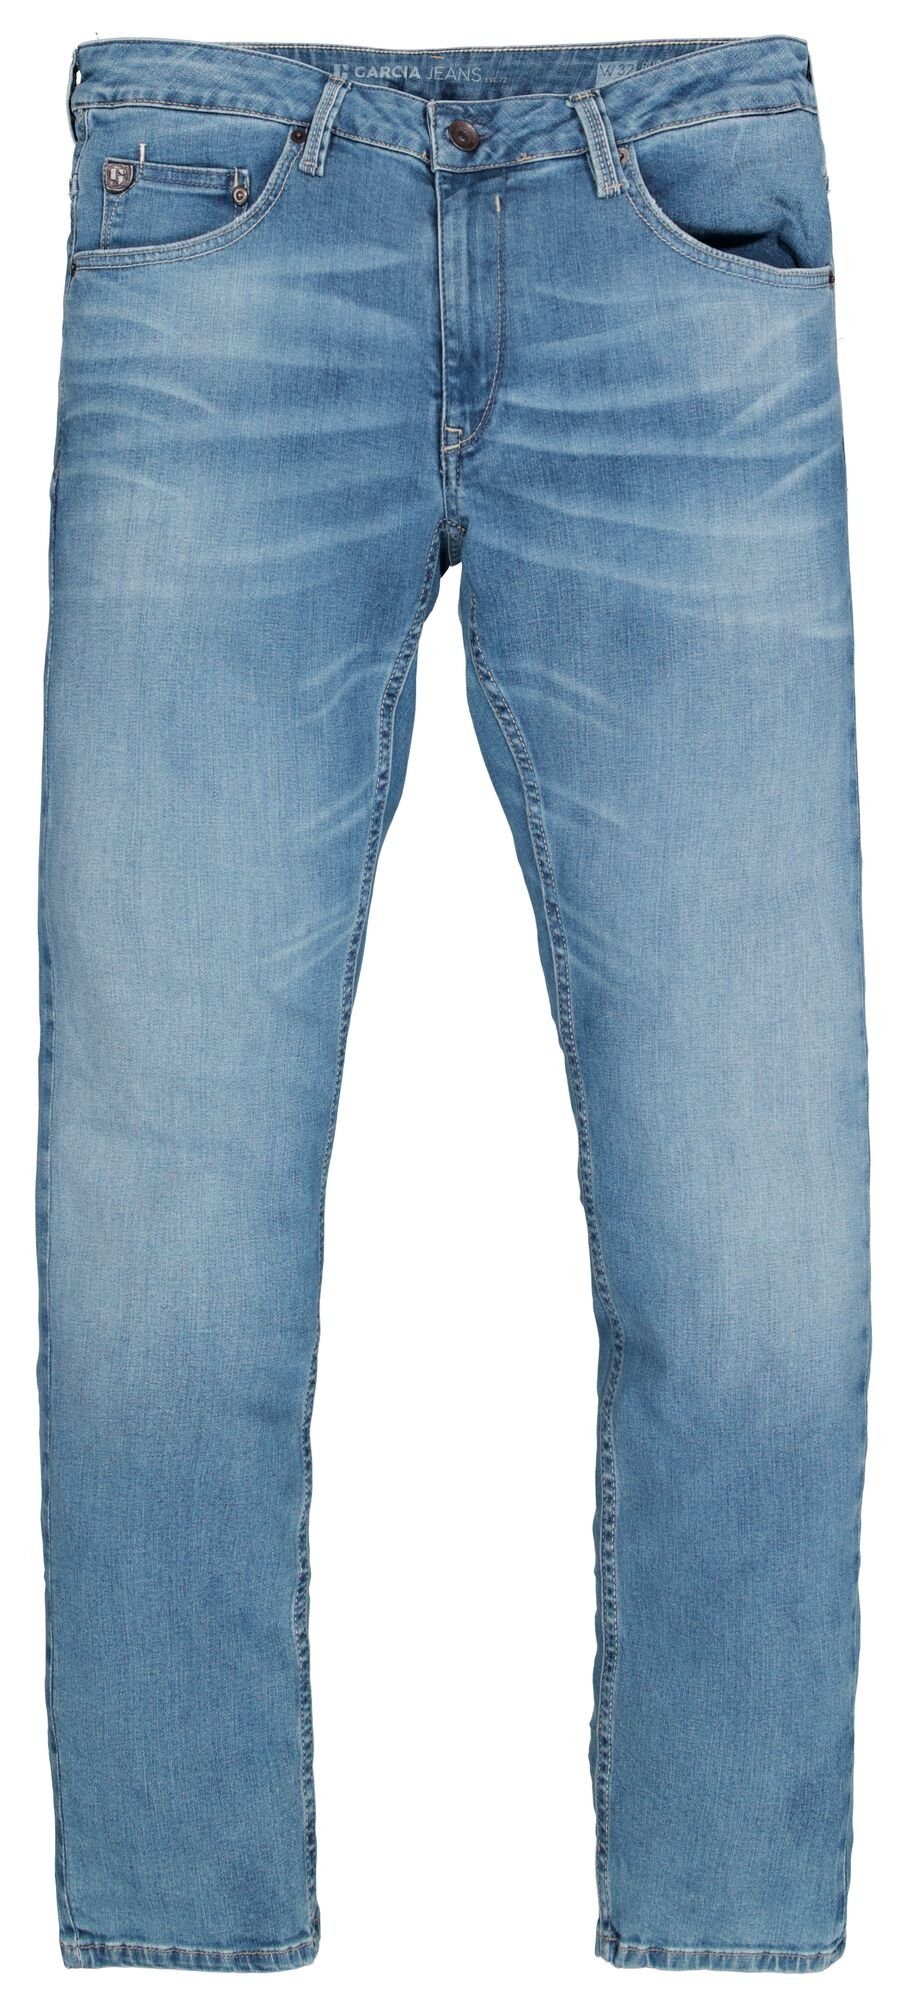 GARCIA JEANS 5-Pocket-Jeans Denim light used Motion - blue 611.6545 GARCIA RUSSO